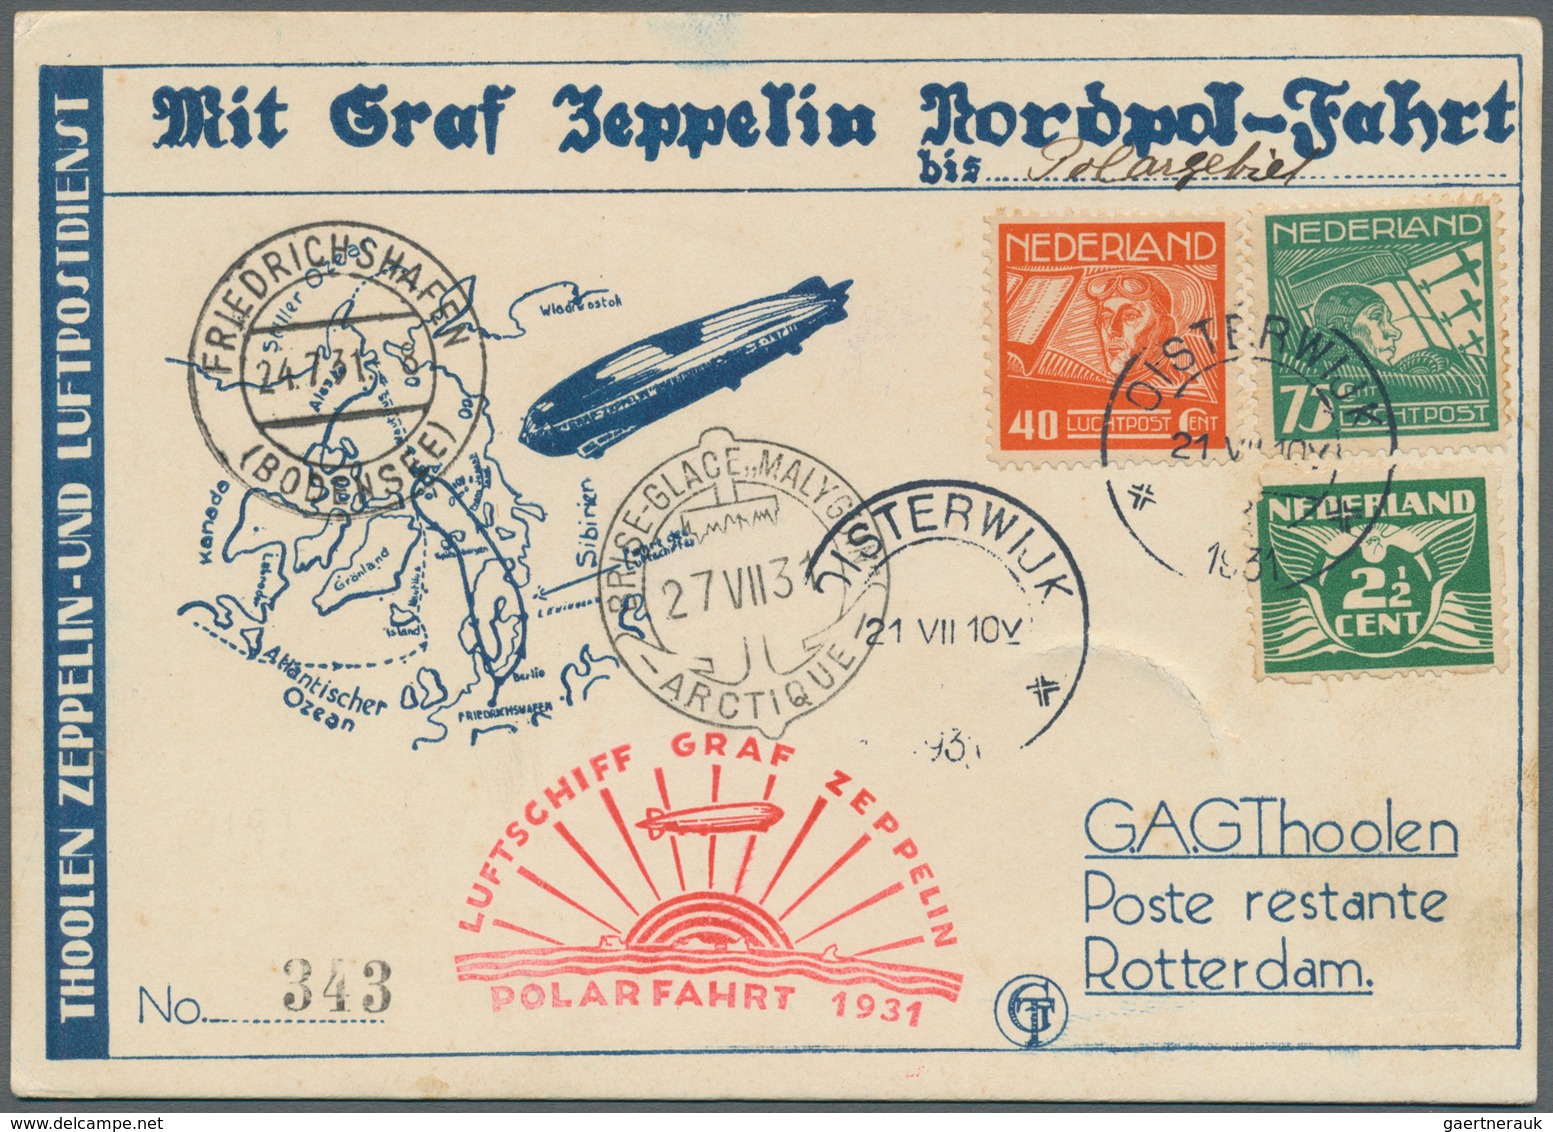 13127 Zeppelinpost Europa: 1931, Polarfahrt, Vordruck-Zeppelin-Karte, Zuleitung Niederlande, Oisterwijk 21 - Sonstige - Europa